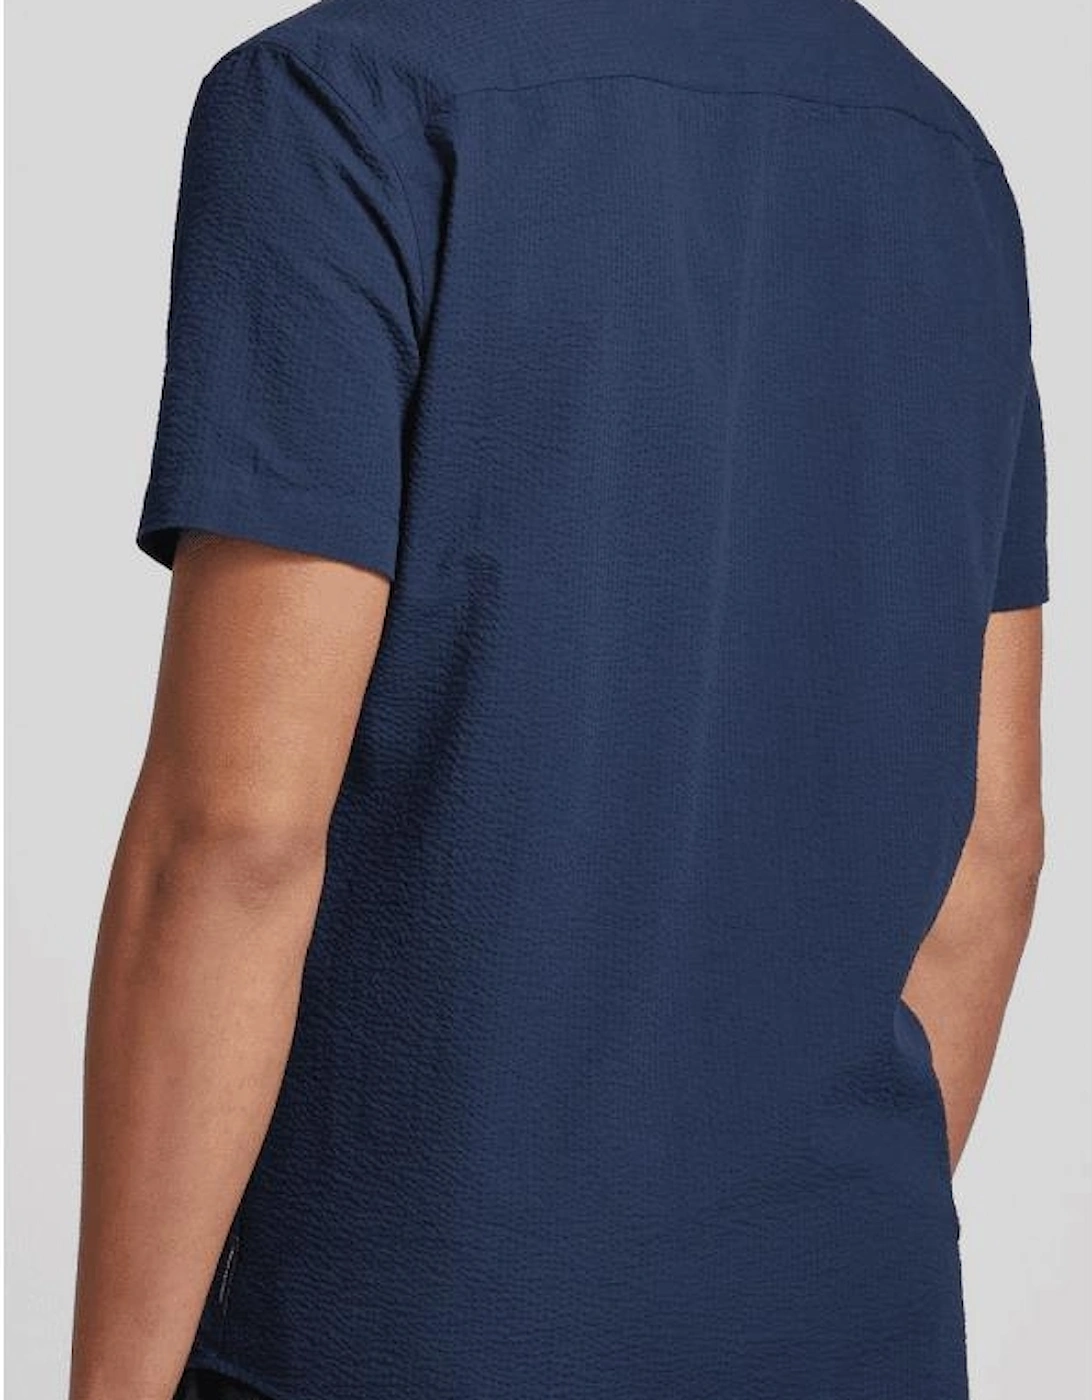 Short Sleeve Textured Navy Shirt